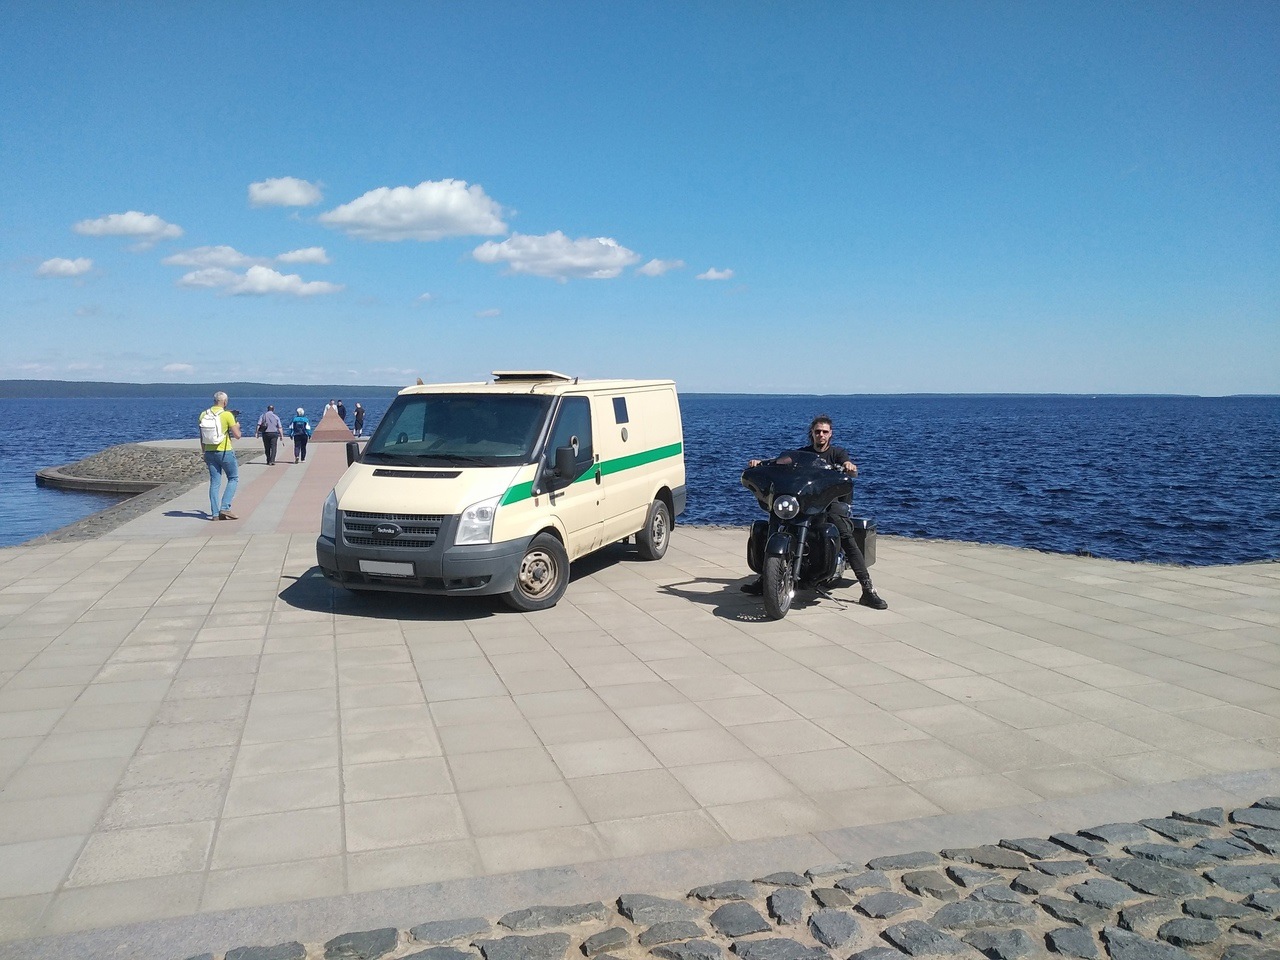 Мэр Петрозаводска возмутился поведением байкера и автомобилиста, выехавших на набережную Онего